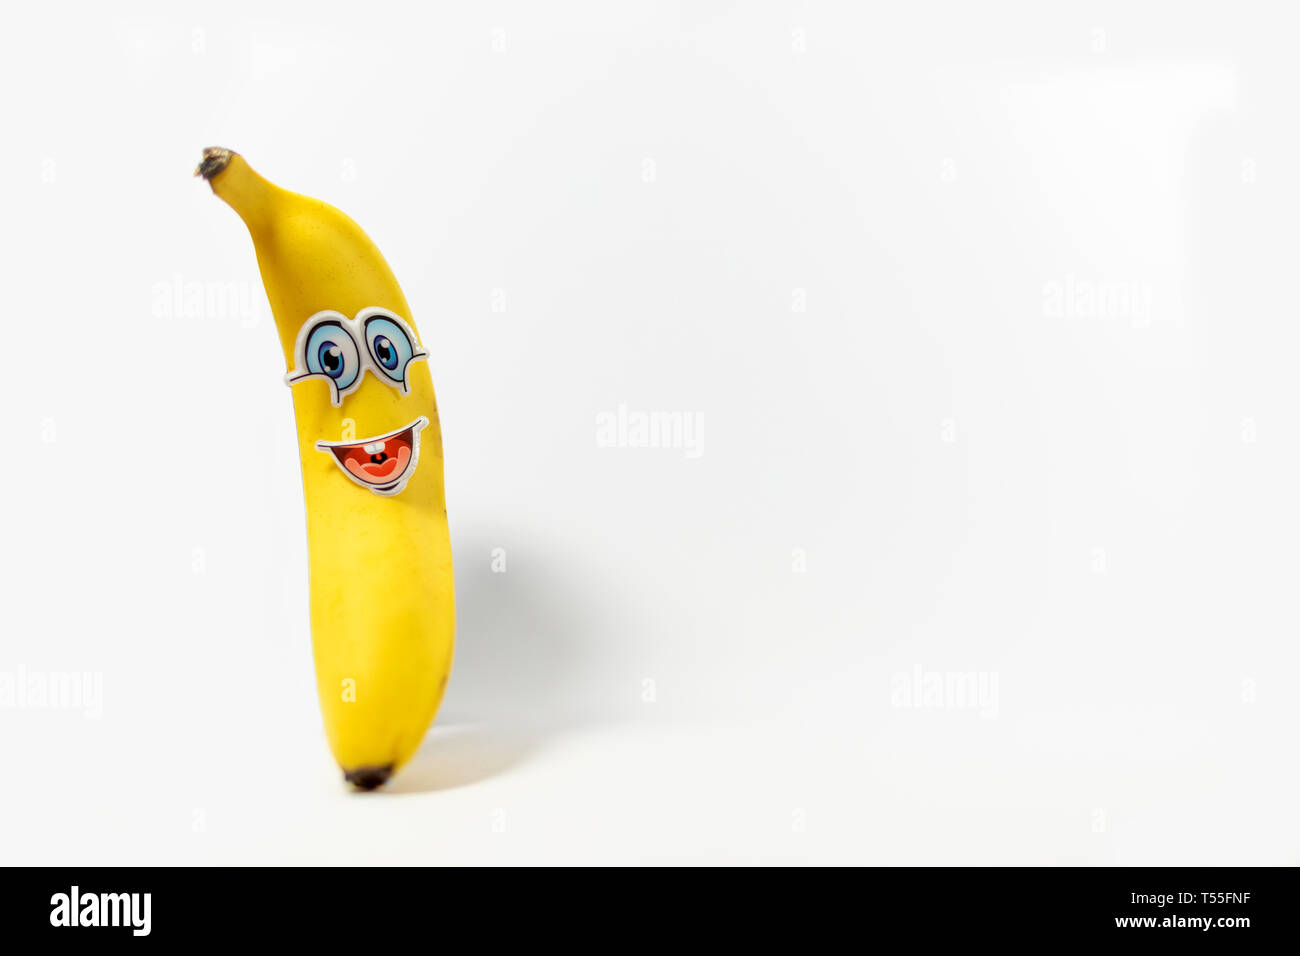 La banane jaune vif avec une bonne caricature comme visage pour encourager les enfants à manger sain, situé sur un fond blanc Banque D'Images